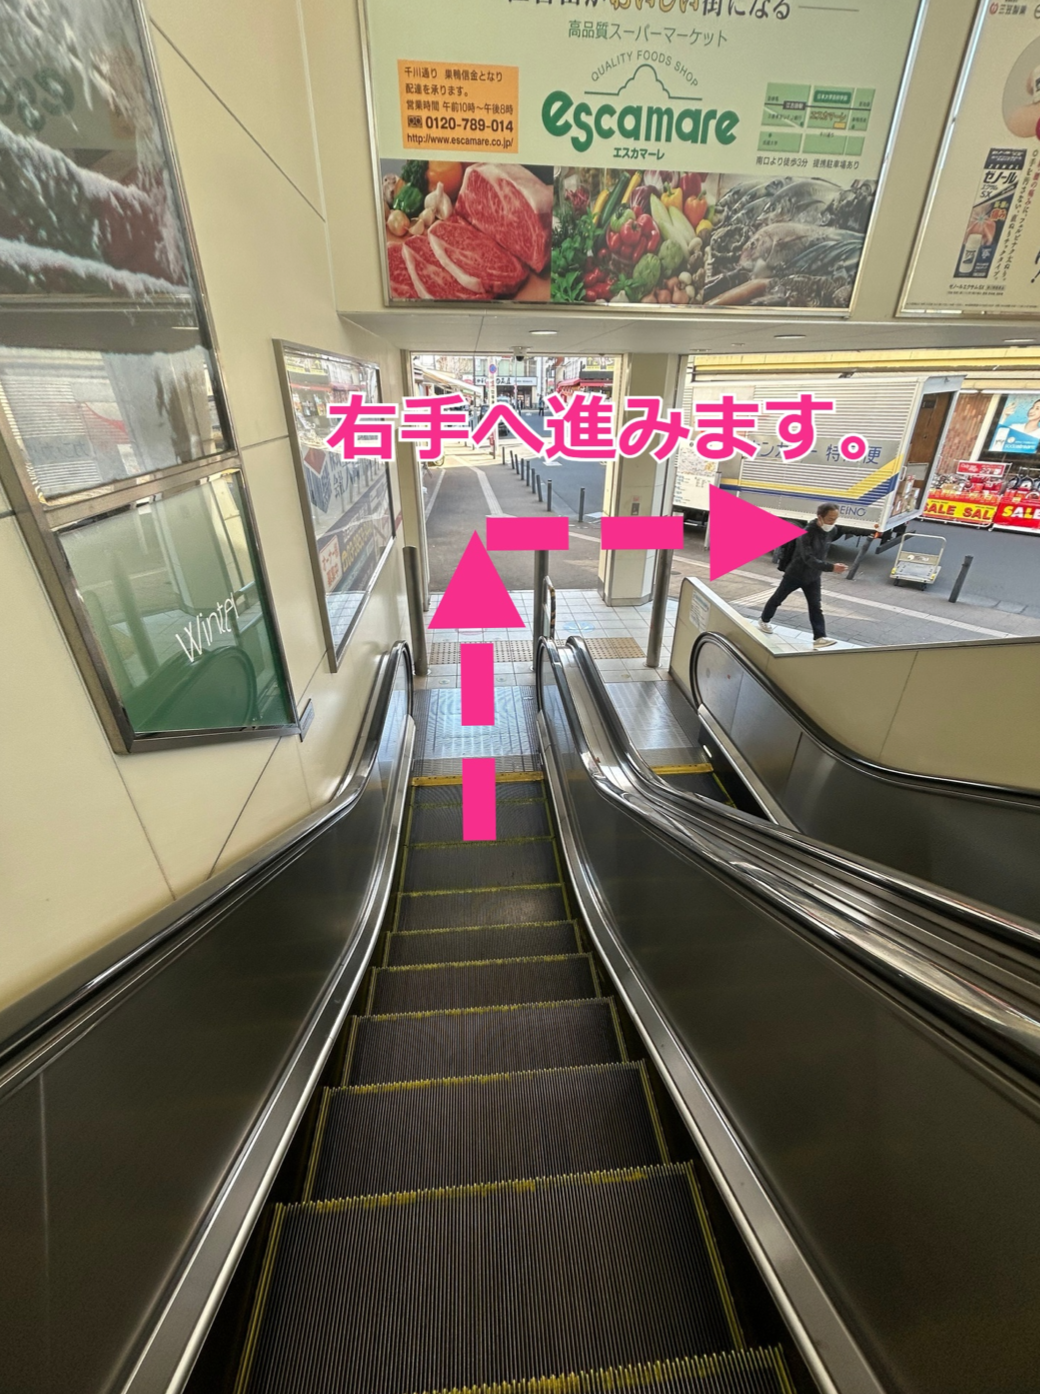 「江古田駅」から弊社までの道順4